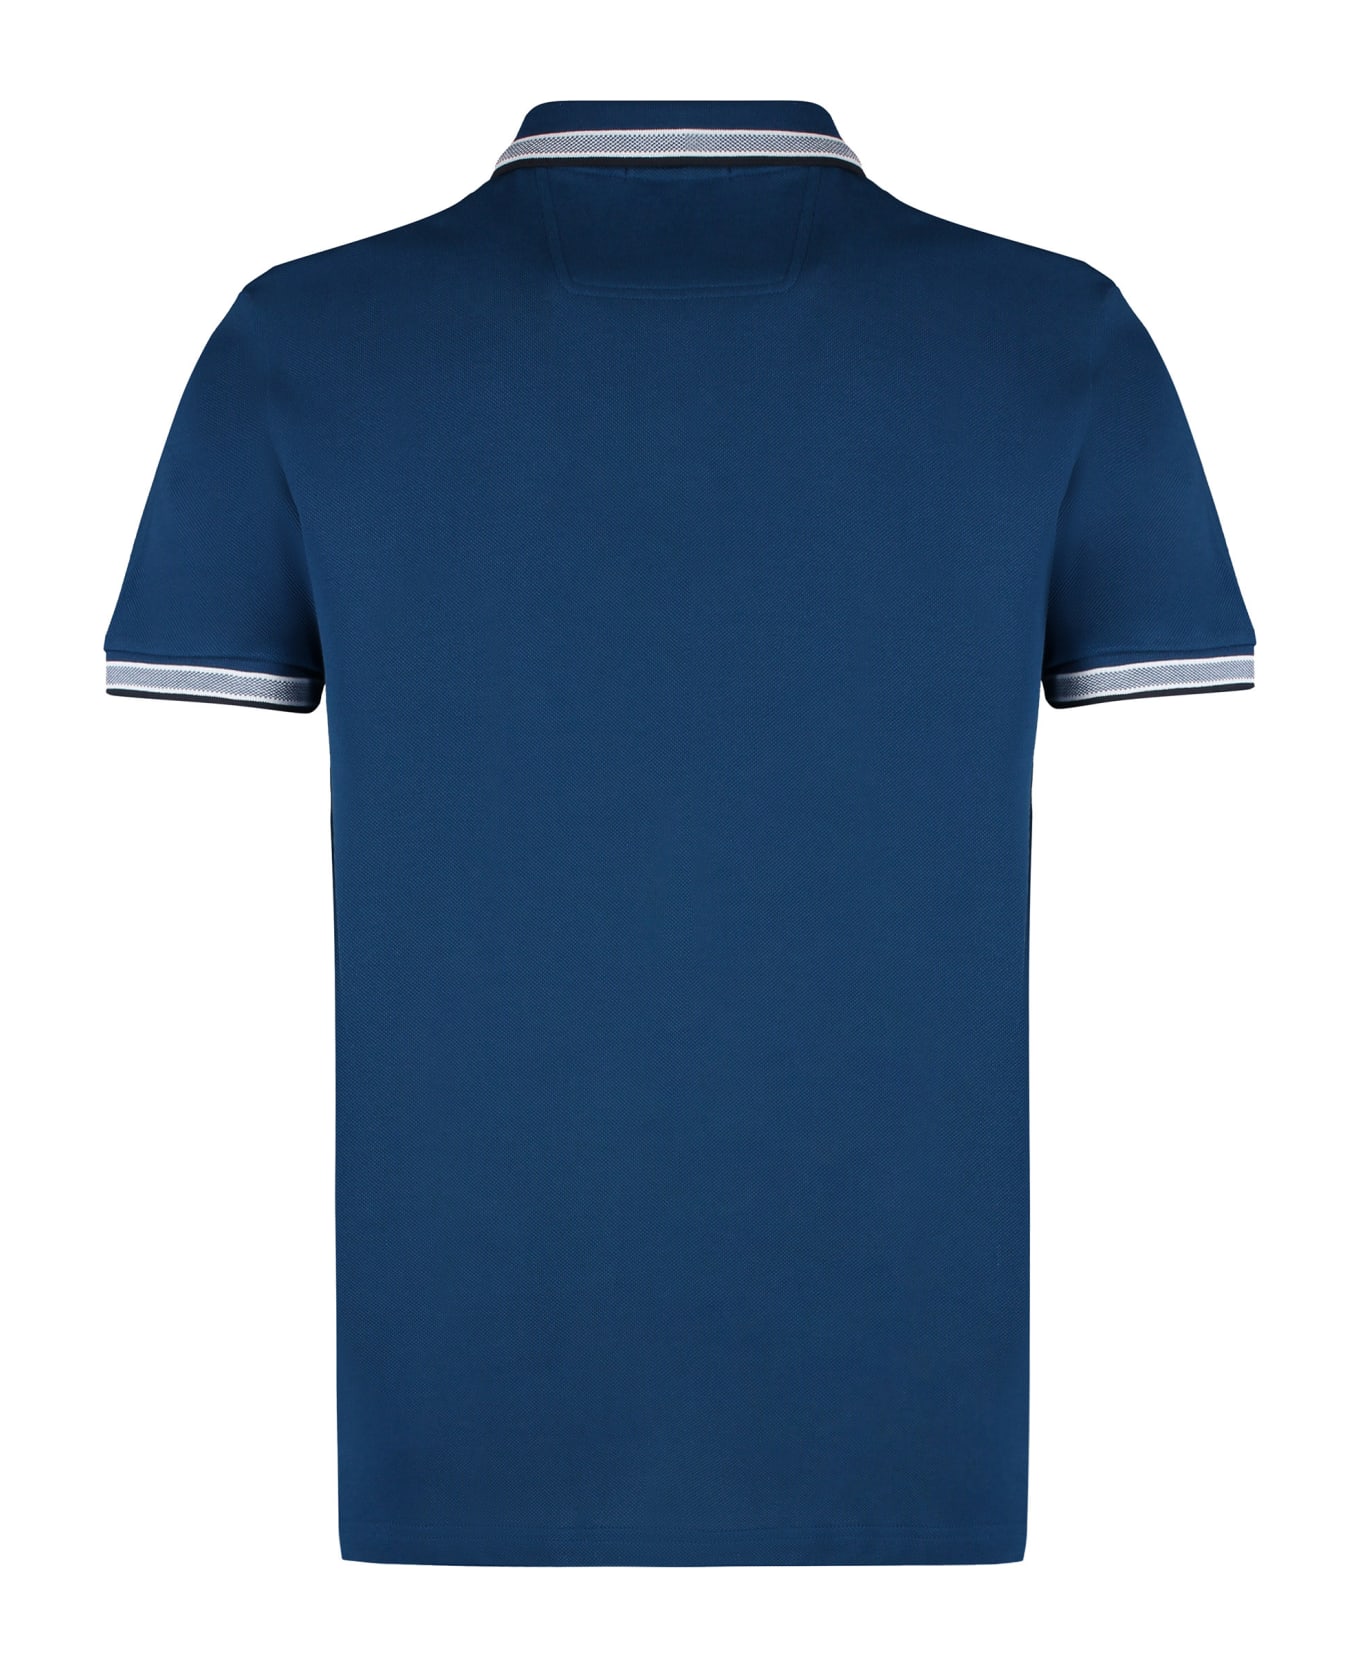 Hugo Boss Short Sleeve Cotton Pique Polo Shirt - Blue